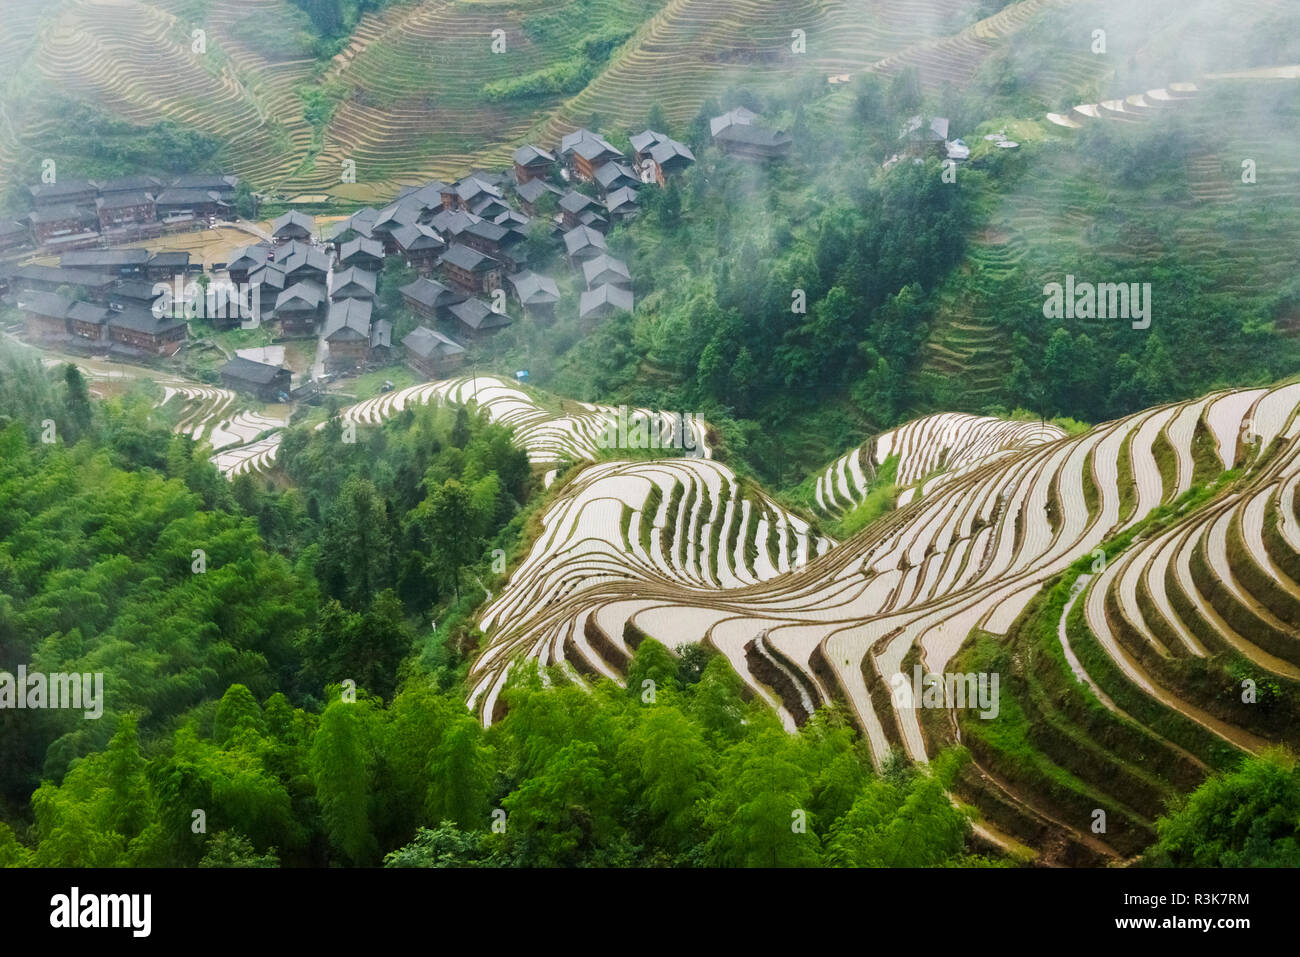 Riempito di acqua terrazze di riso nella nebbia di mattina in montagna, Dazhai, provincia di Guangxi, Cina Foto Stock